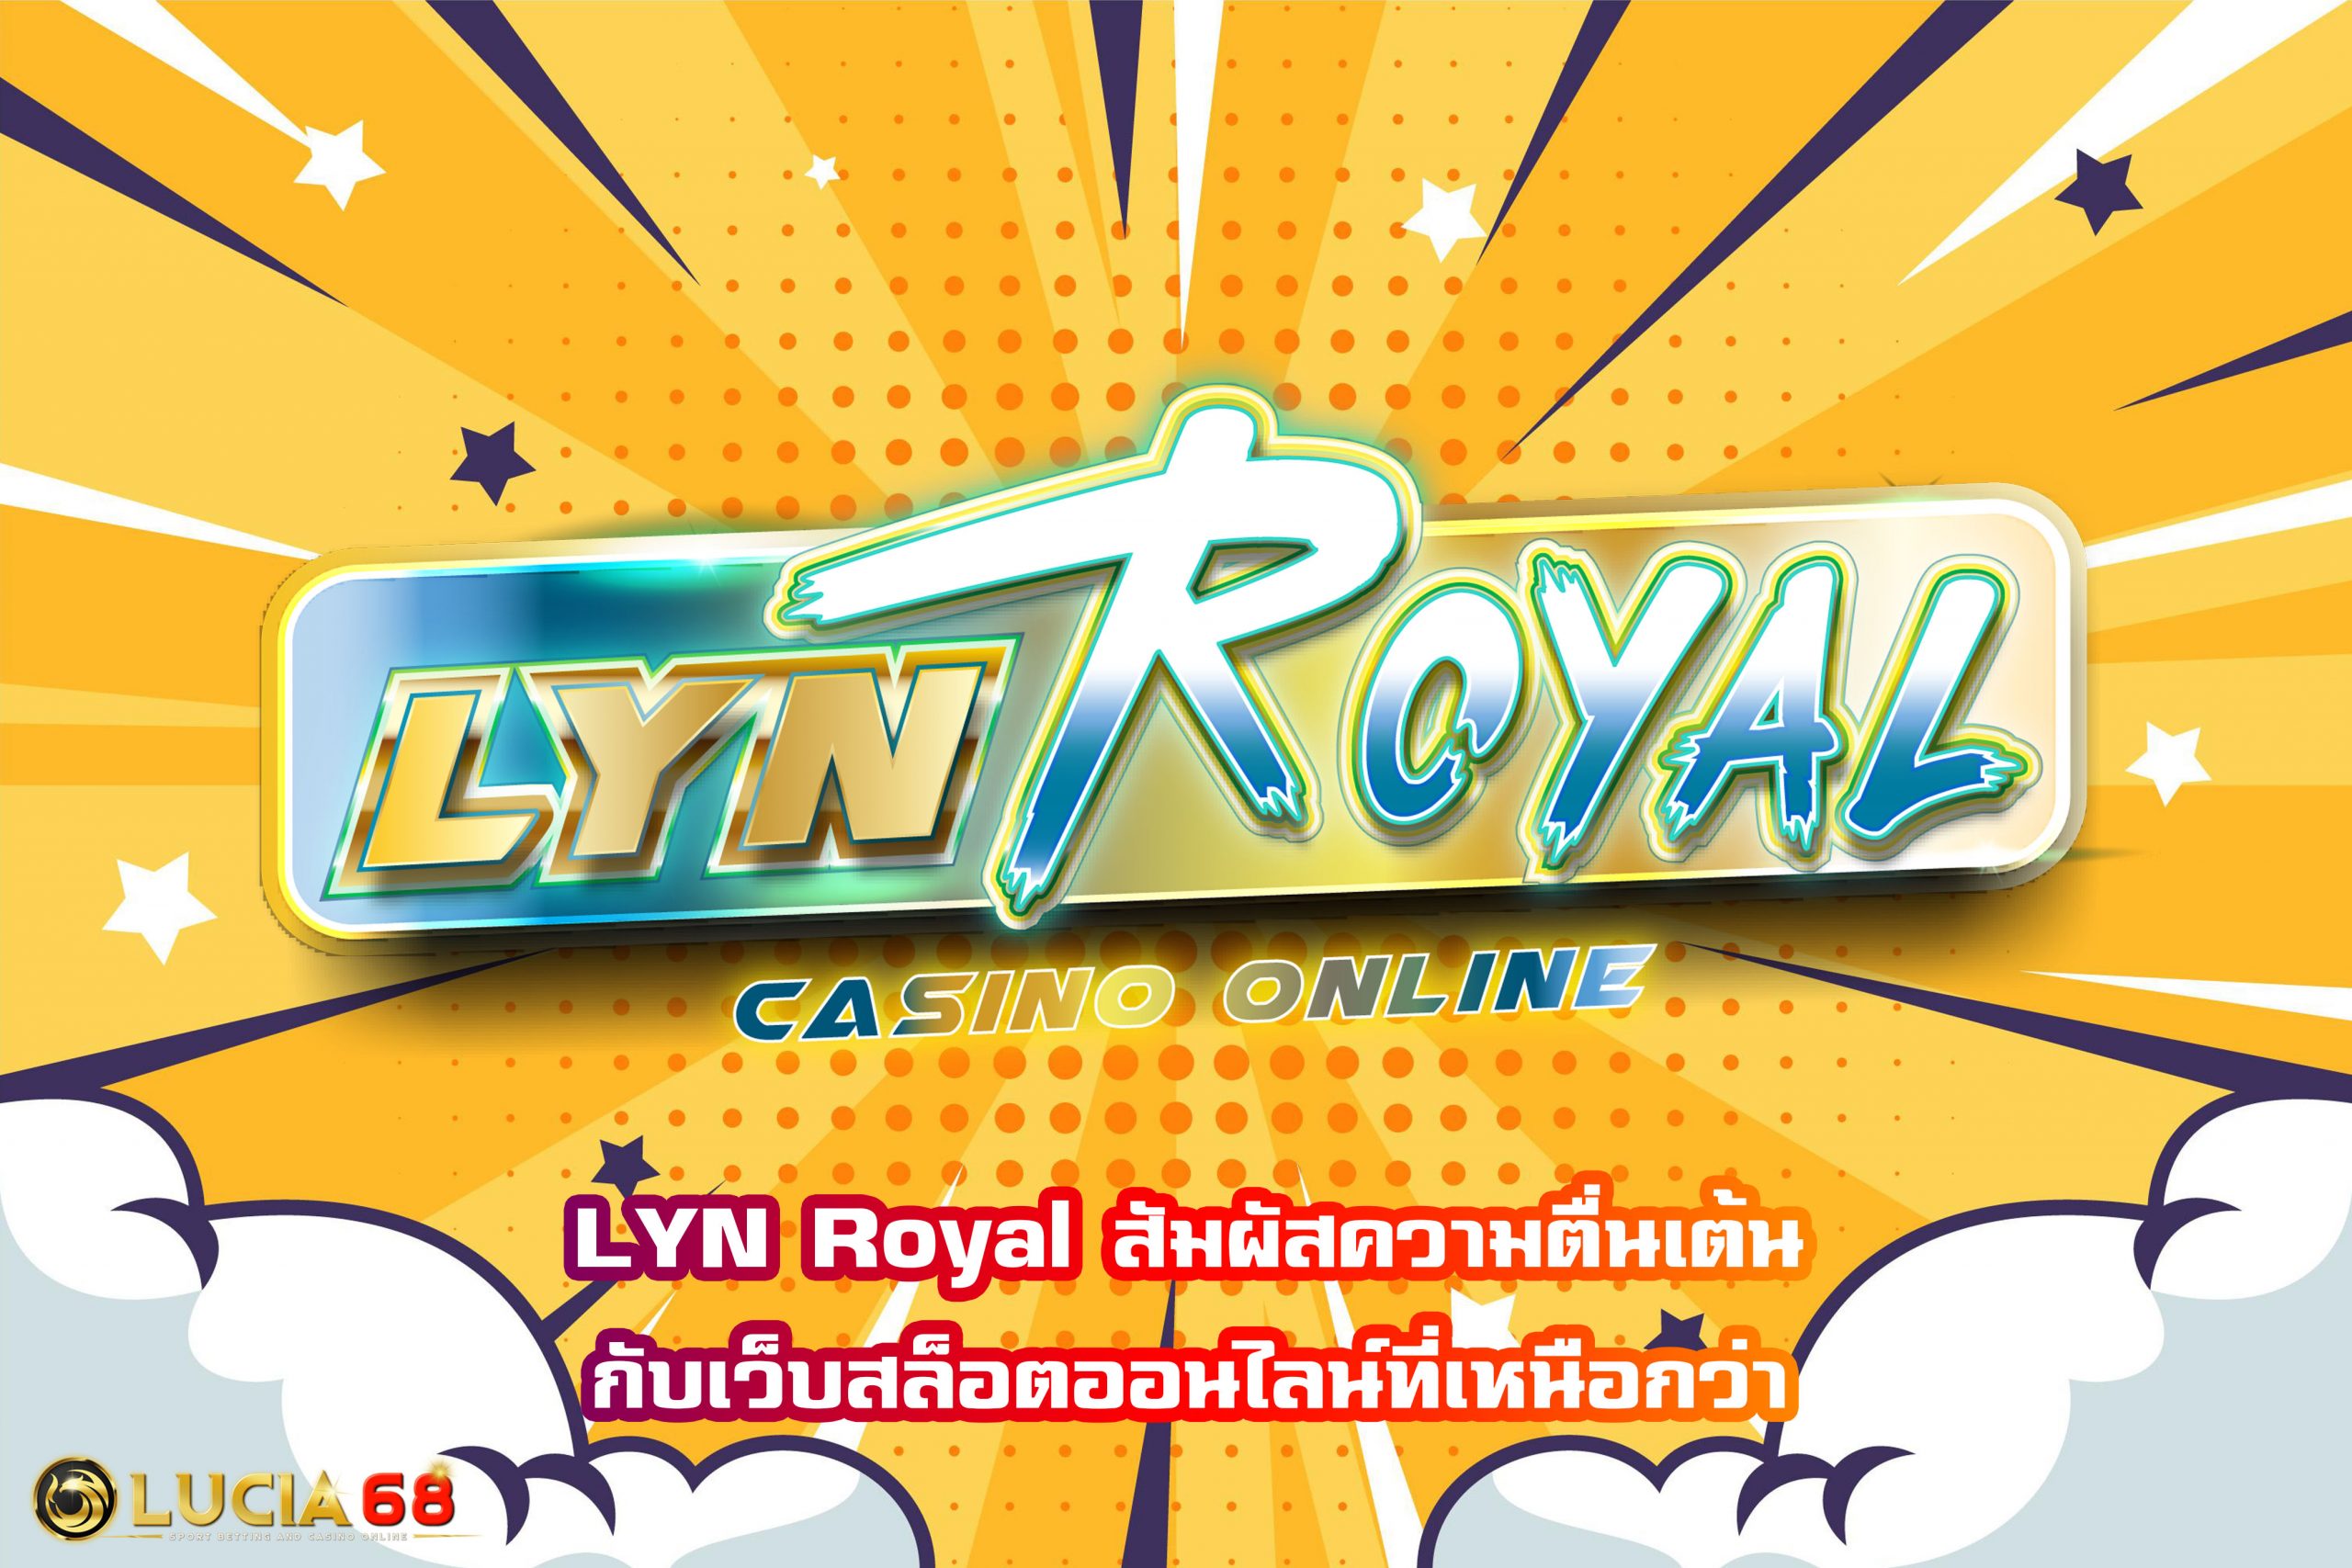 LYN Royal สัมผัสความตื่นเต้นกับเว็บสล็อตออนไลน์ที่เหนือกว่า